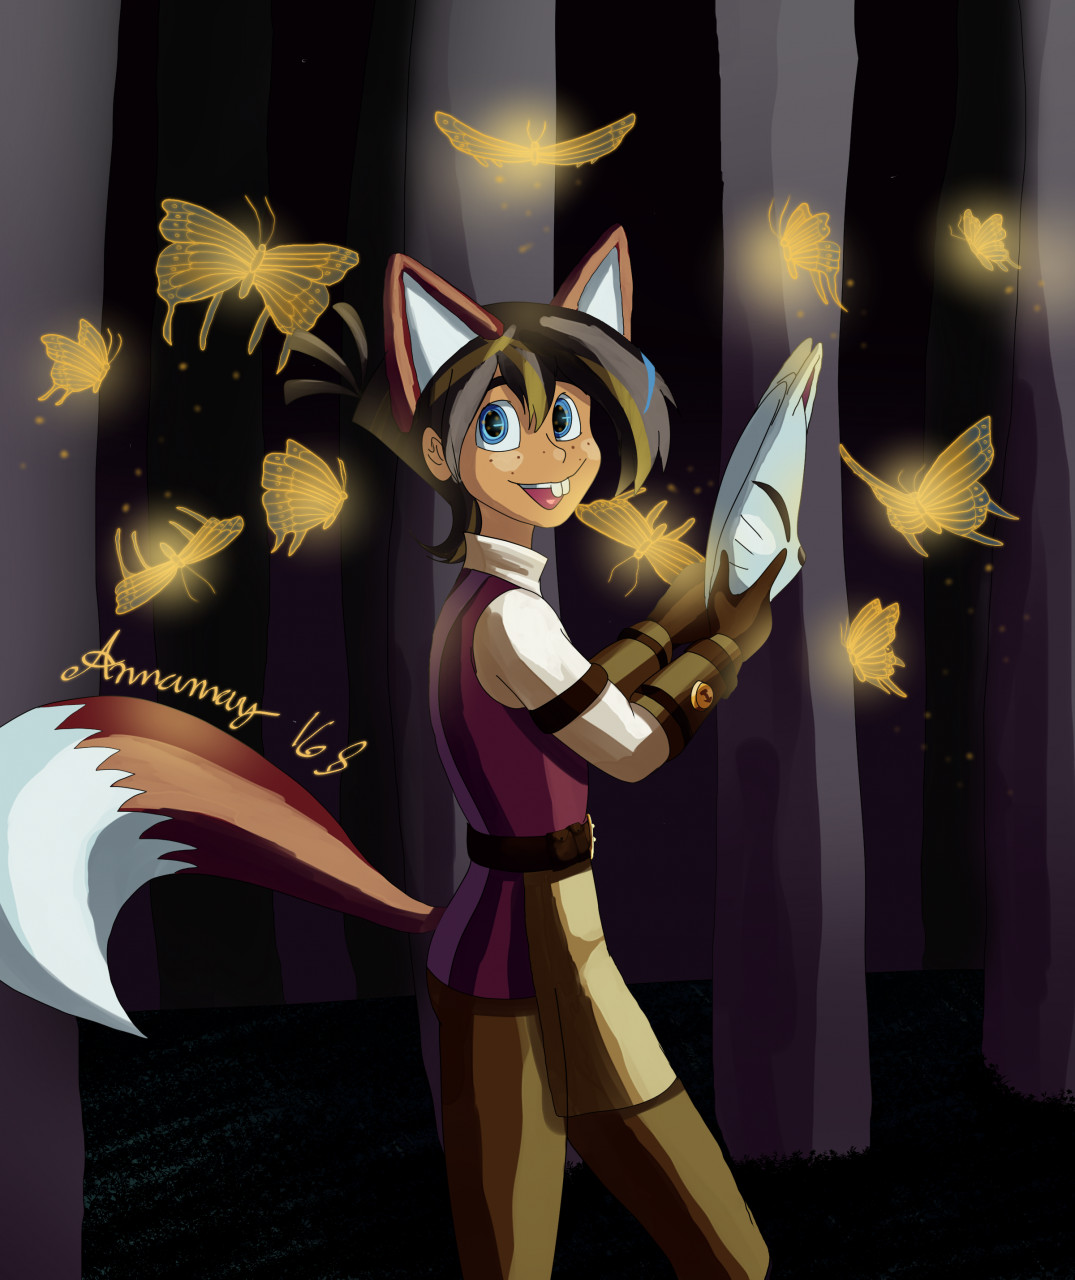 foxes artist tumblr